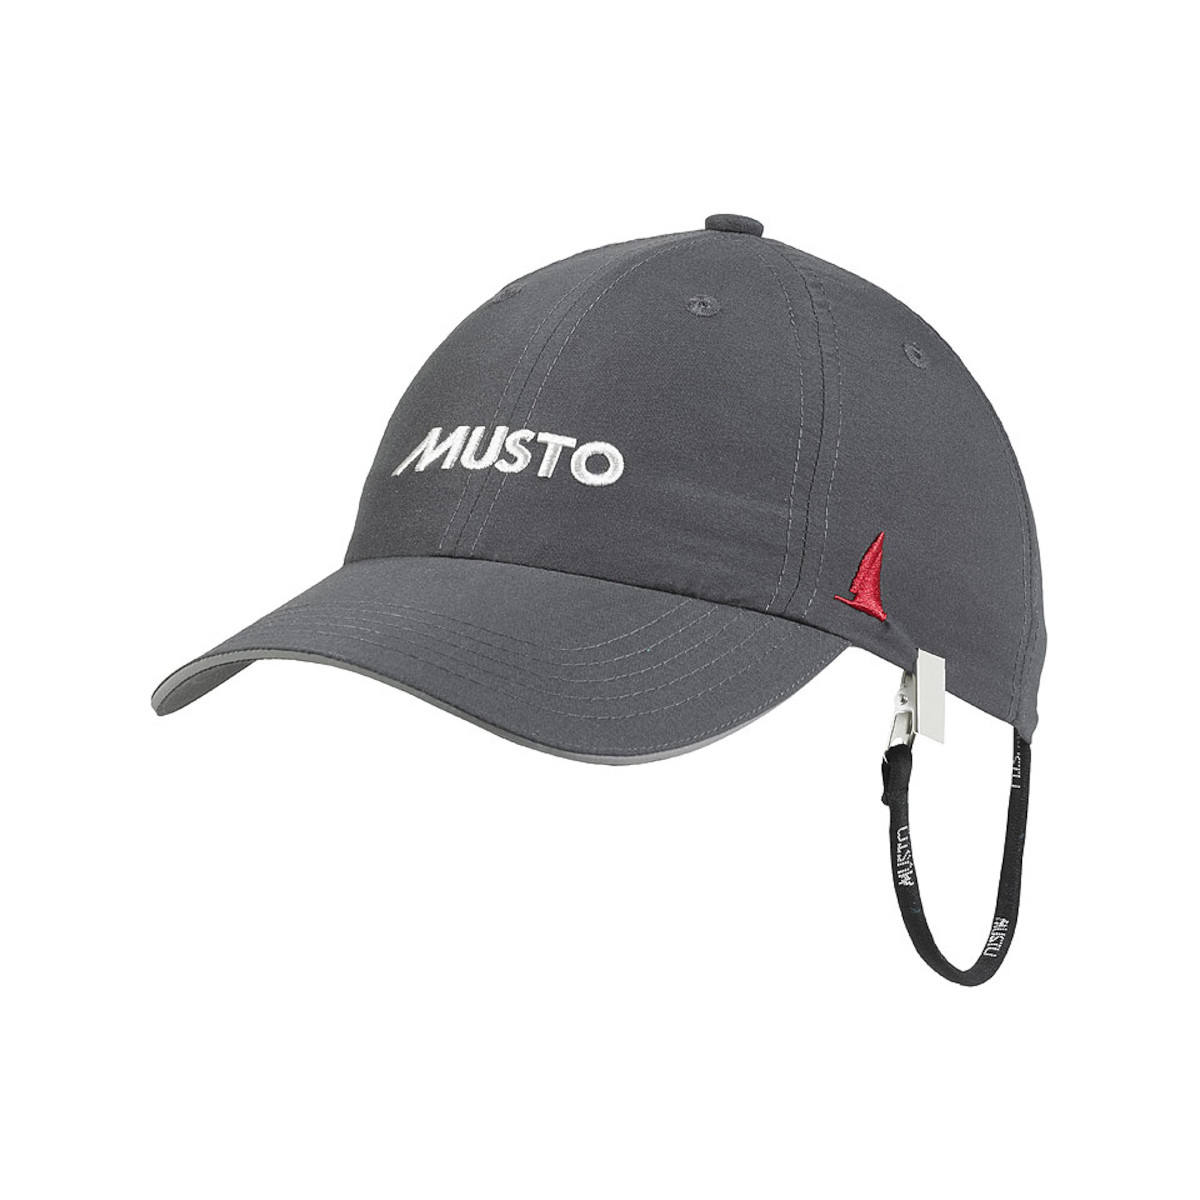 Musto Essential Fast Dry Crew Cap zeilpet antraciet